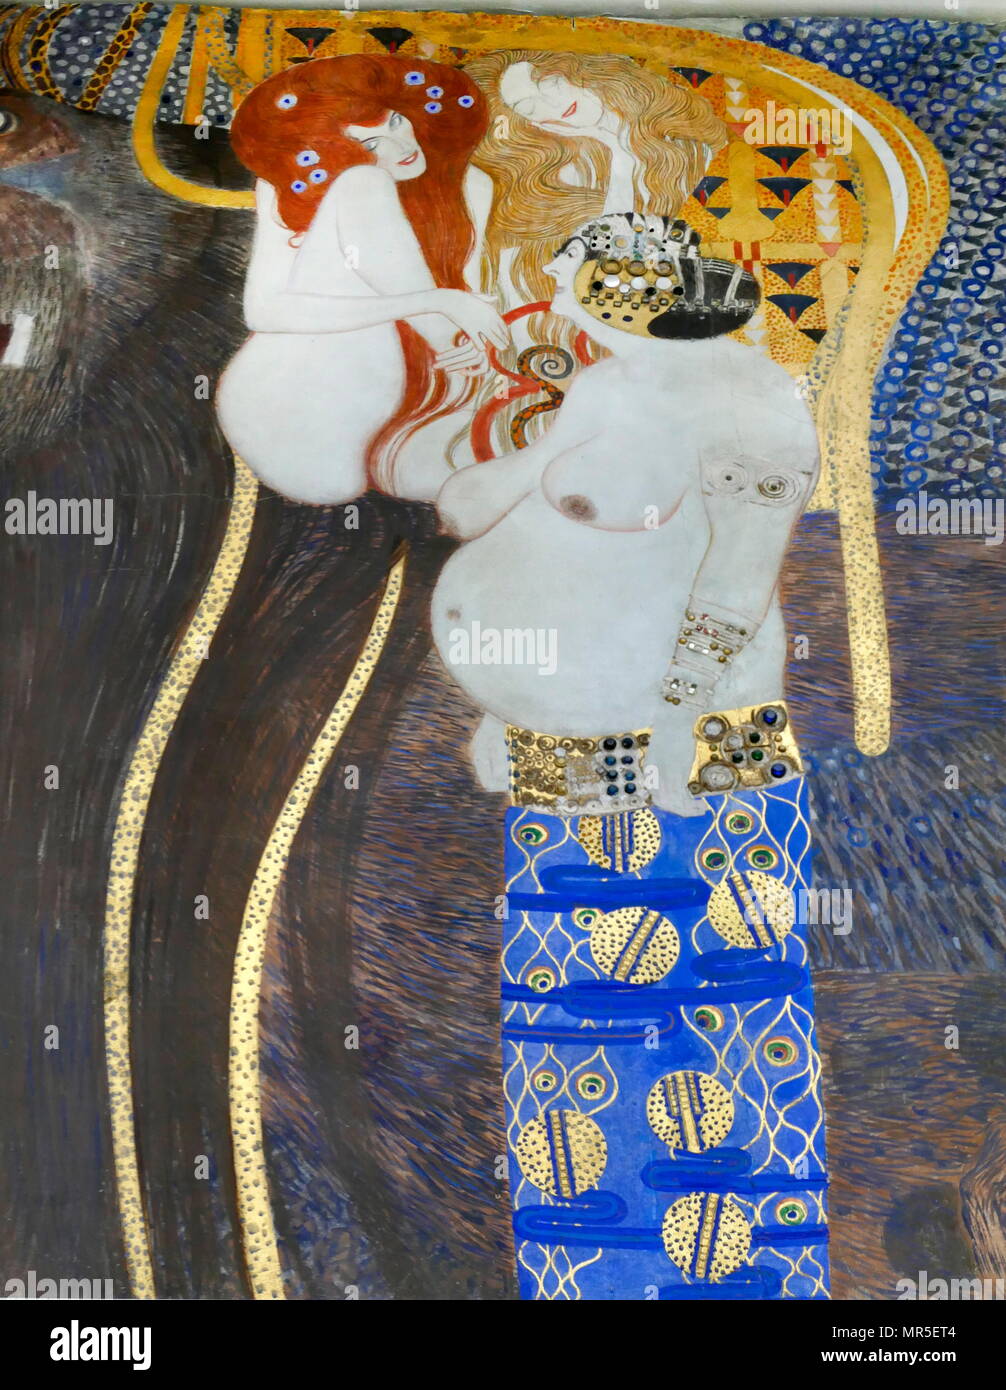 El friso de Beethoven es una pintura de Gustav Klimt en exhibición en el Palacio de la Secesión de Viena, Austria. En 1901, Klimt pintó el friso de Beethoven para la 14ª exposición secesionista de Viena con motivo de la celebración del compositor. Significaba para la exposición, el friso fue pintada directamente sobre las paredes con materiales ligeros. El friso ilustra el deseo humano de felicidad en un mundo de sufrimiento y tempestuosos que uno sostiene, no sólo con las fuerzas del mal externas pero también con debilidades internas. Foto de stock